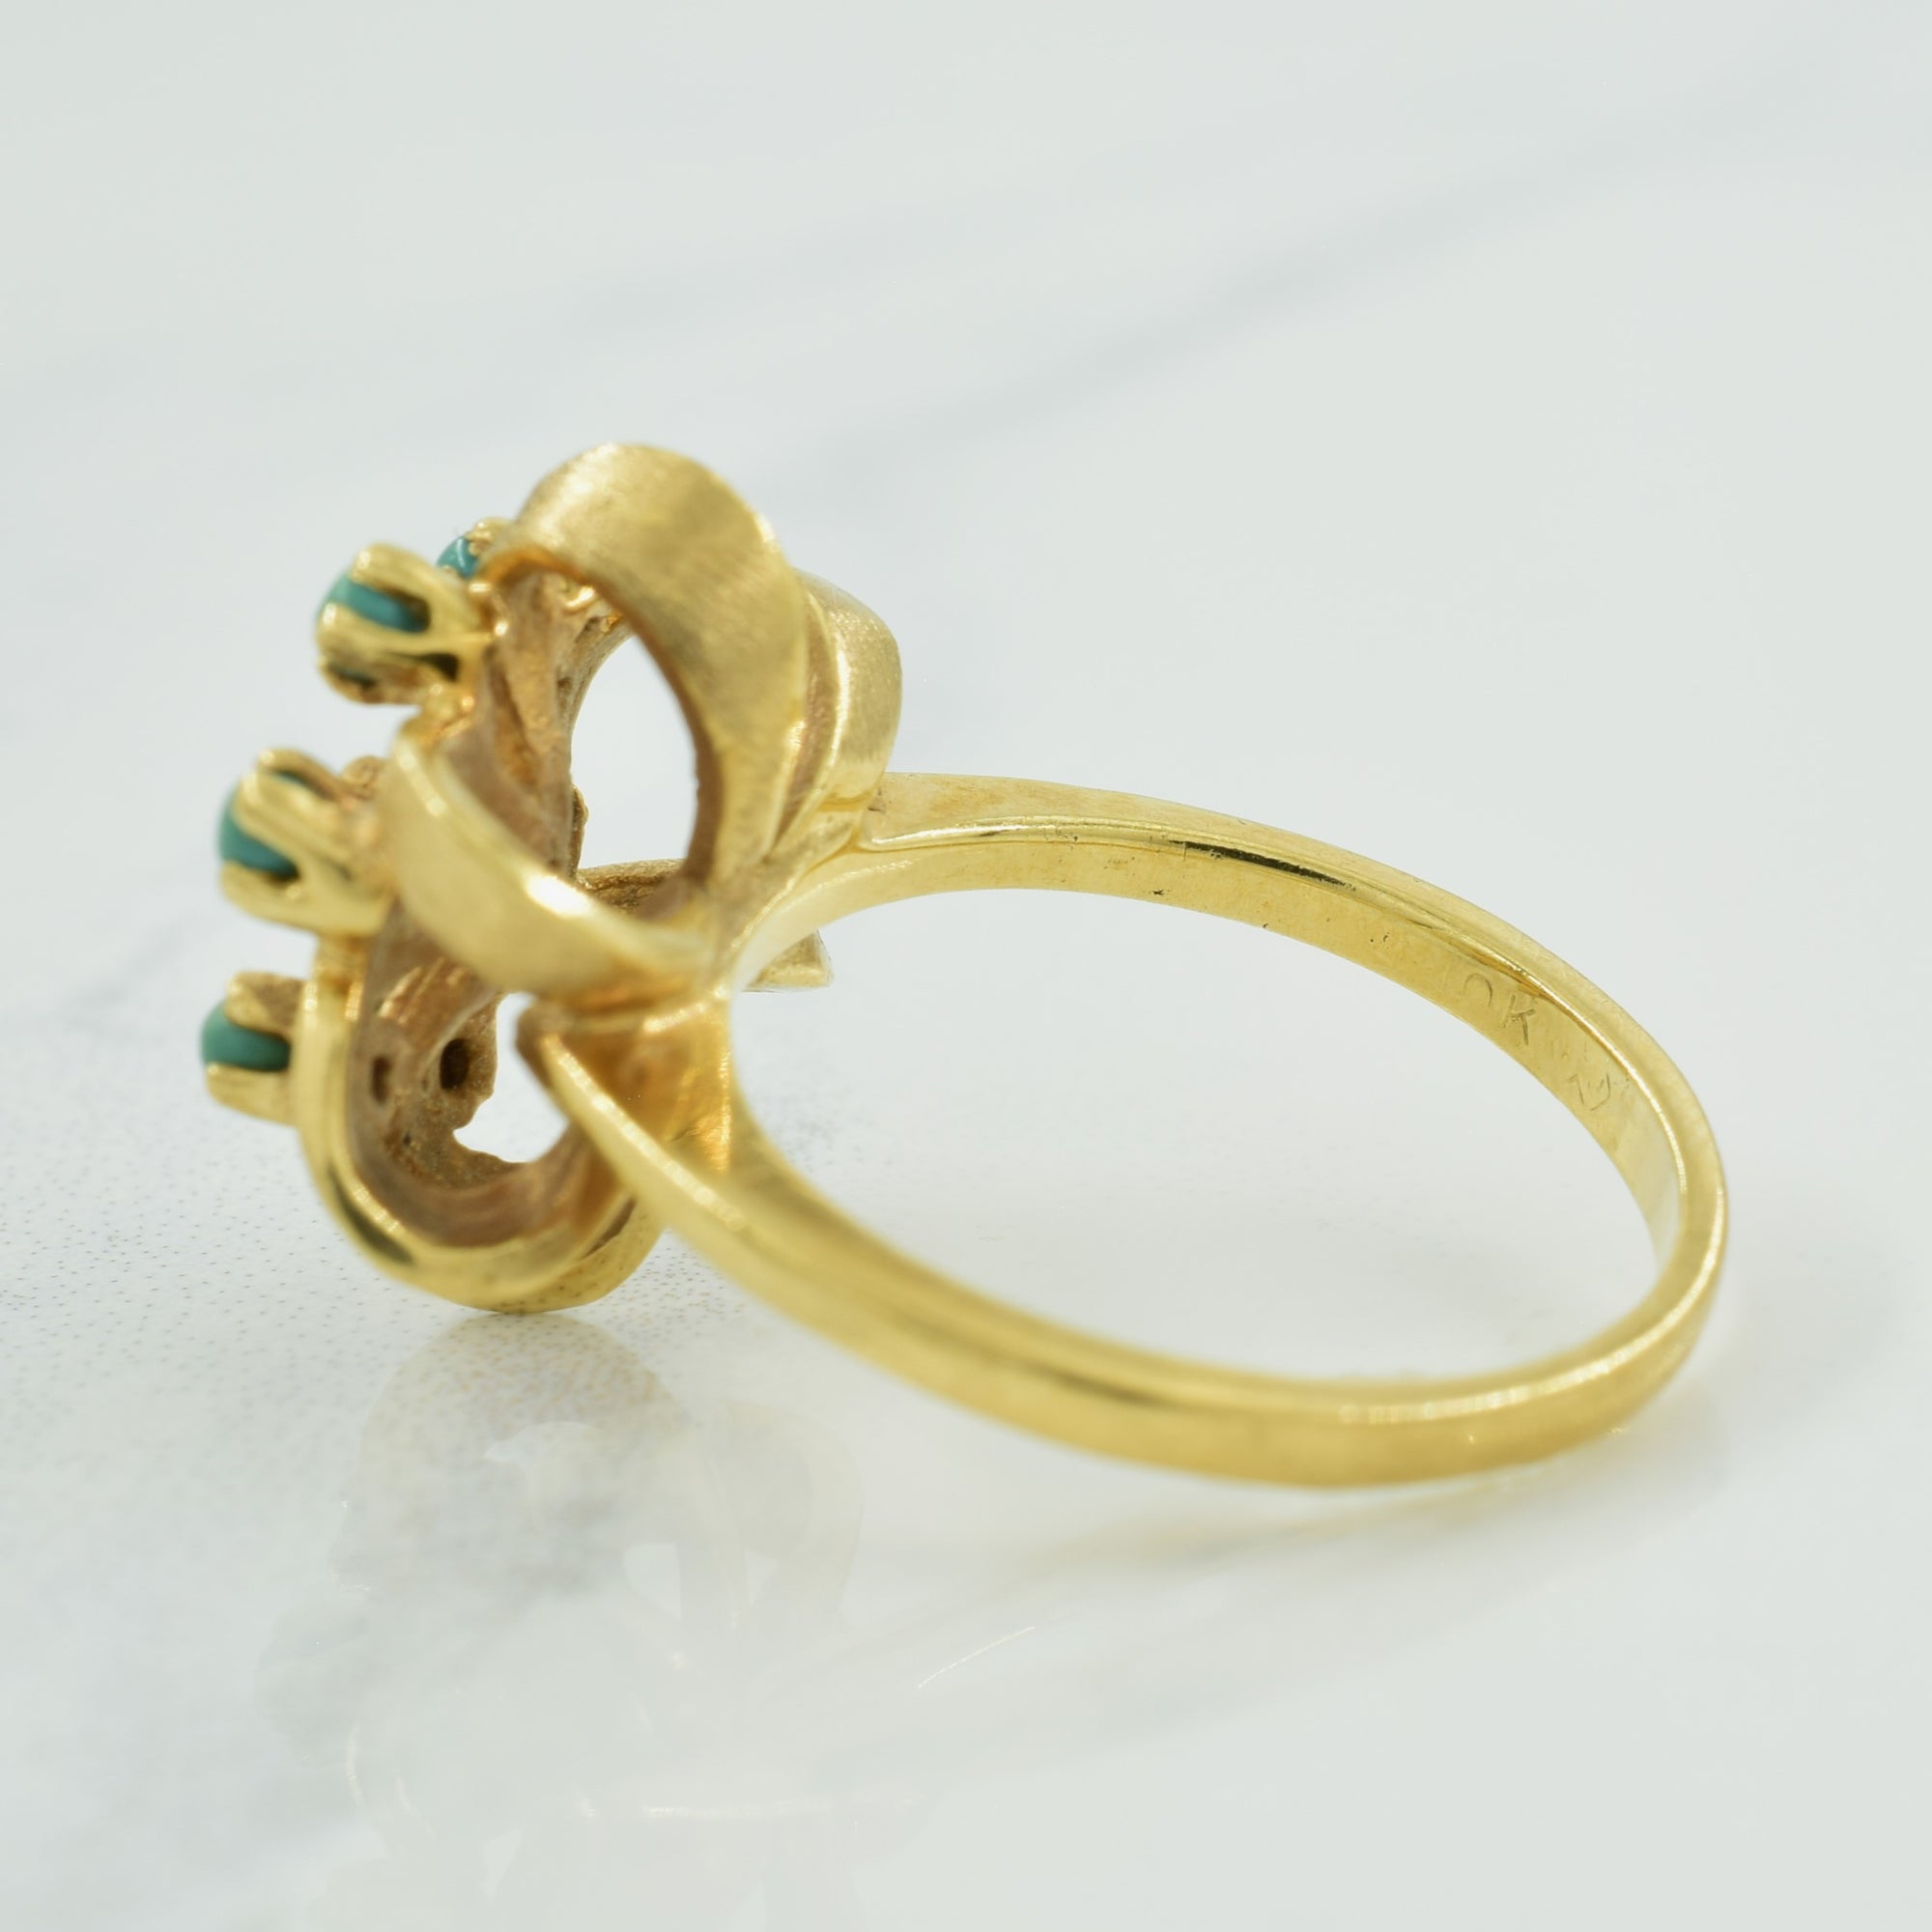 Turquoise Ring | 0.40ctw | SZ 5.75 |